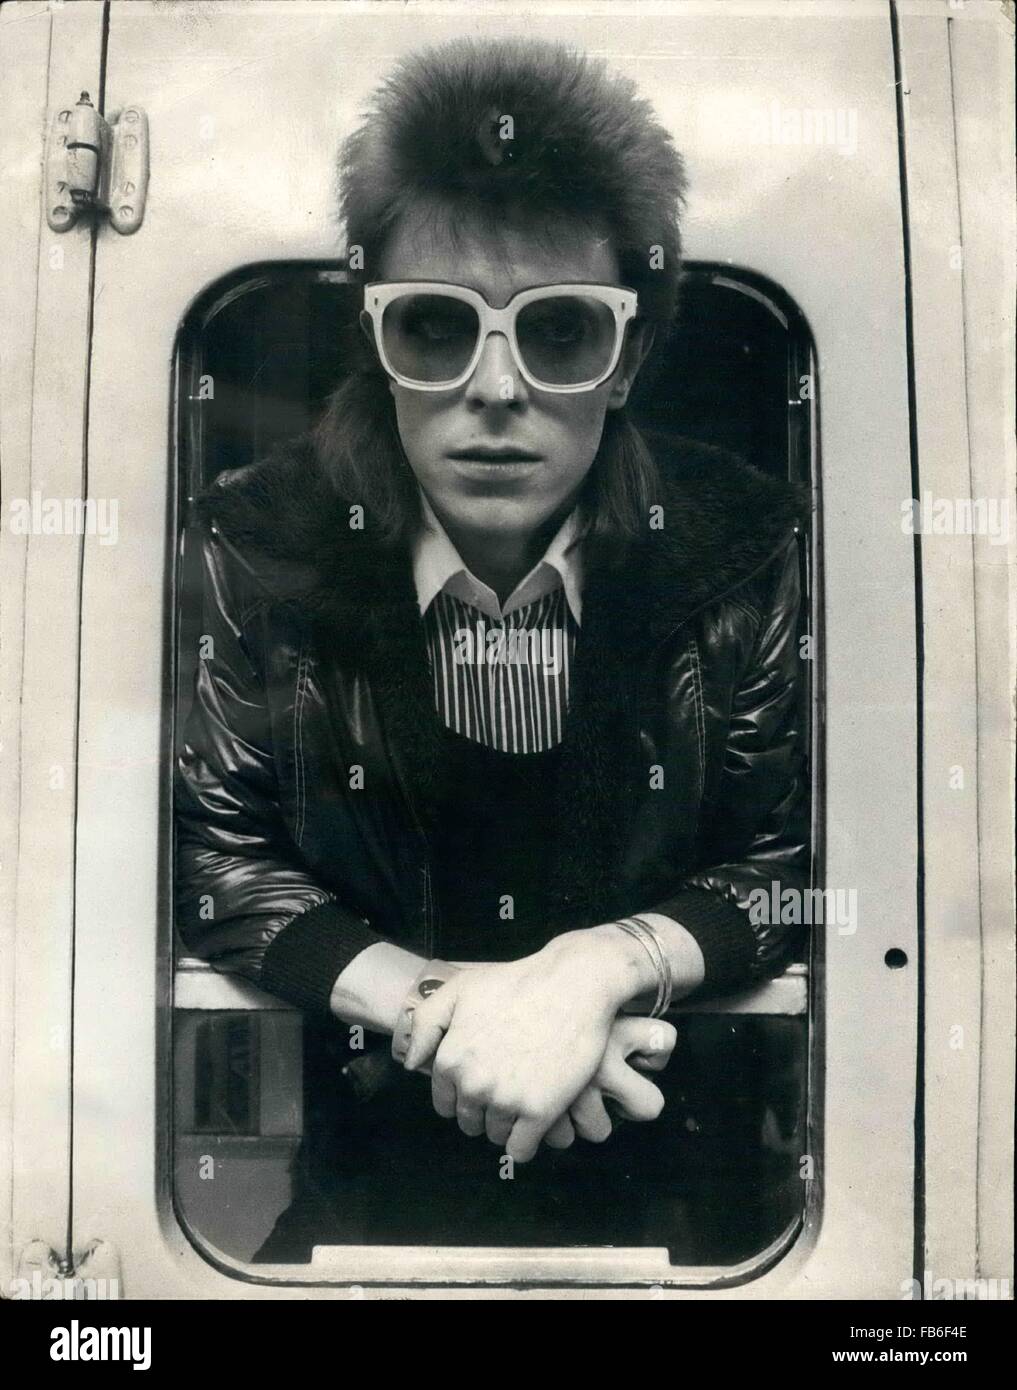 PICS FILE: Jan 10, 2016 - File - David Bowie, infinitamente variabile, ferocemente forward-looking cantautore che ha insegnato a generazioni di musicisti circa la potenza del dramma, immagini e personae, morto domenica circondato dalla famiglia. Egli è stato 69. Bowie morì dopo diciotto mesi di battaglia con il cancro. Nella foto: lug. 07, 1973 - David Bowie off a Parigi.: David Bowie, il pop star che la scorsa settimana a uscire con concerti presso il picco della sua popolarità ha certamente non ha smesso di funzionare. Credito: ZUMA Press, Inc./Alamy Live News Foto Stock